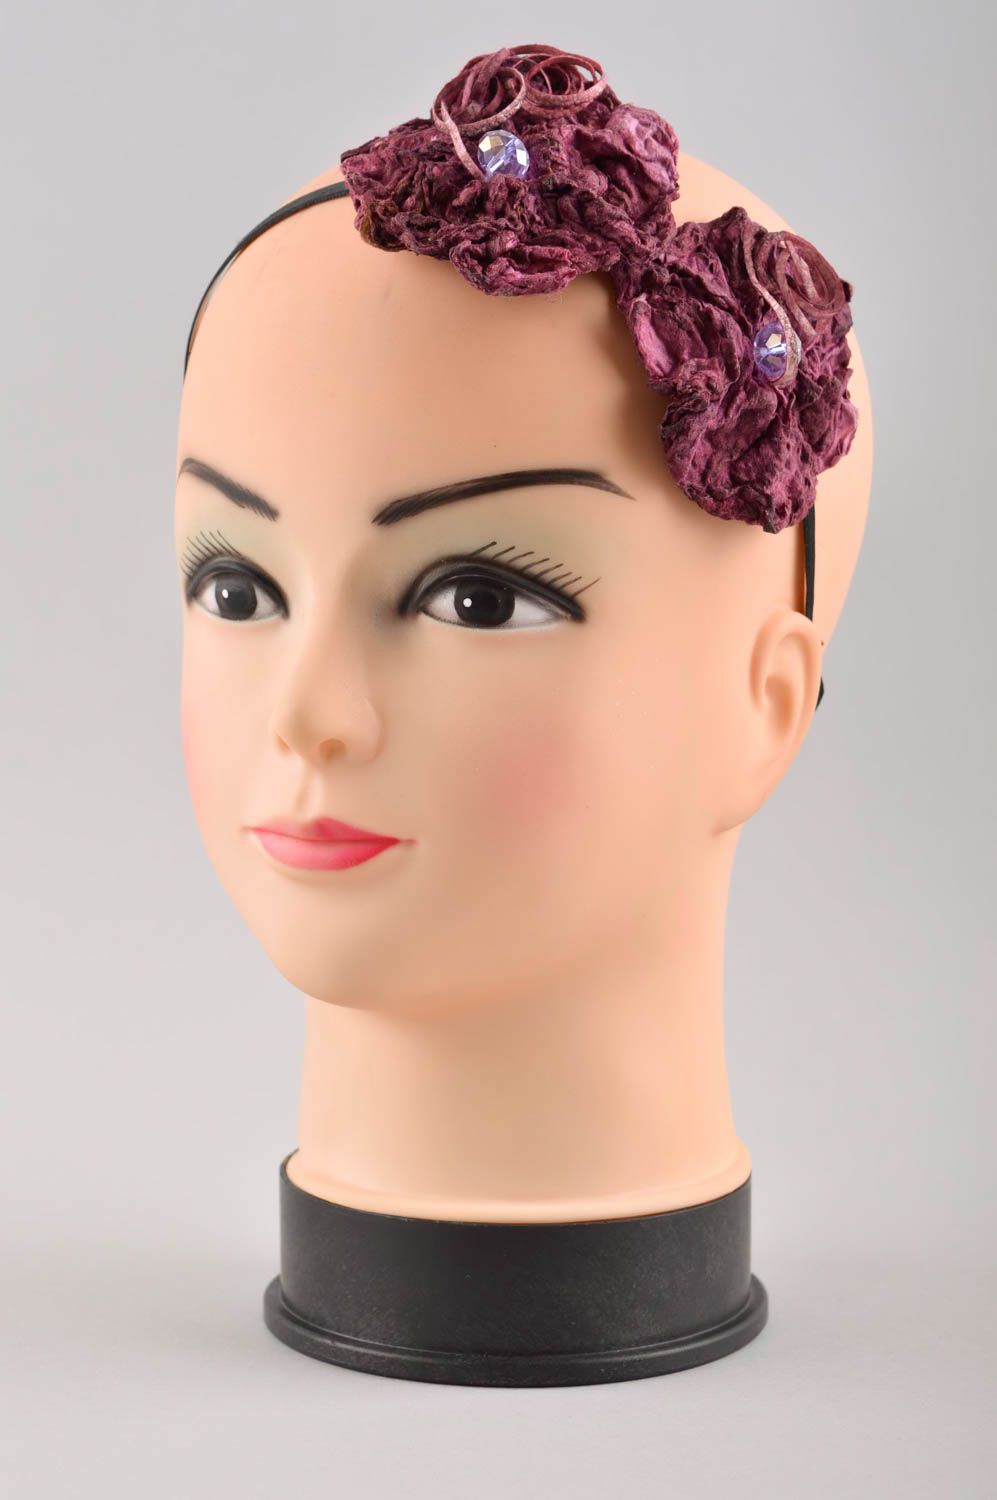 Аксессуар для волос ручная работа обруч на голову женский аксессуар фото 2